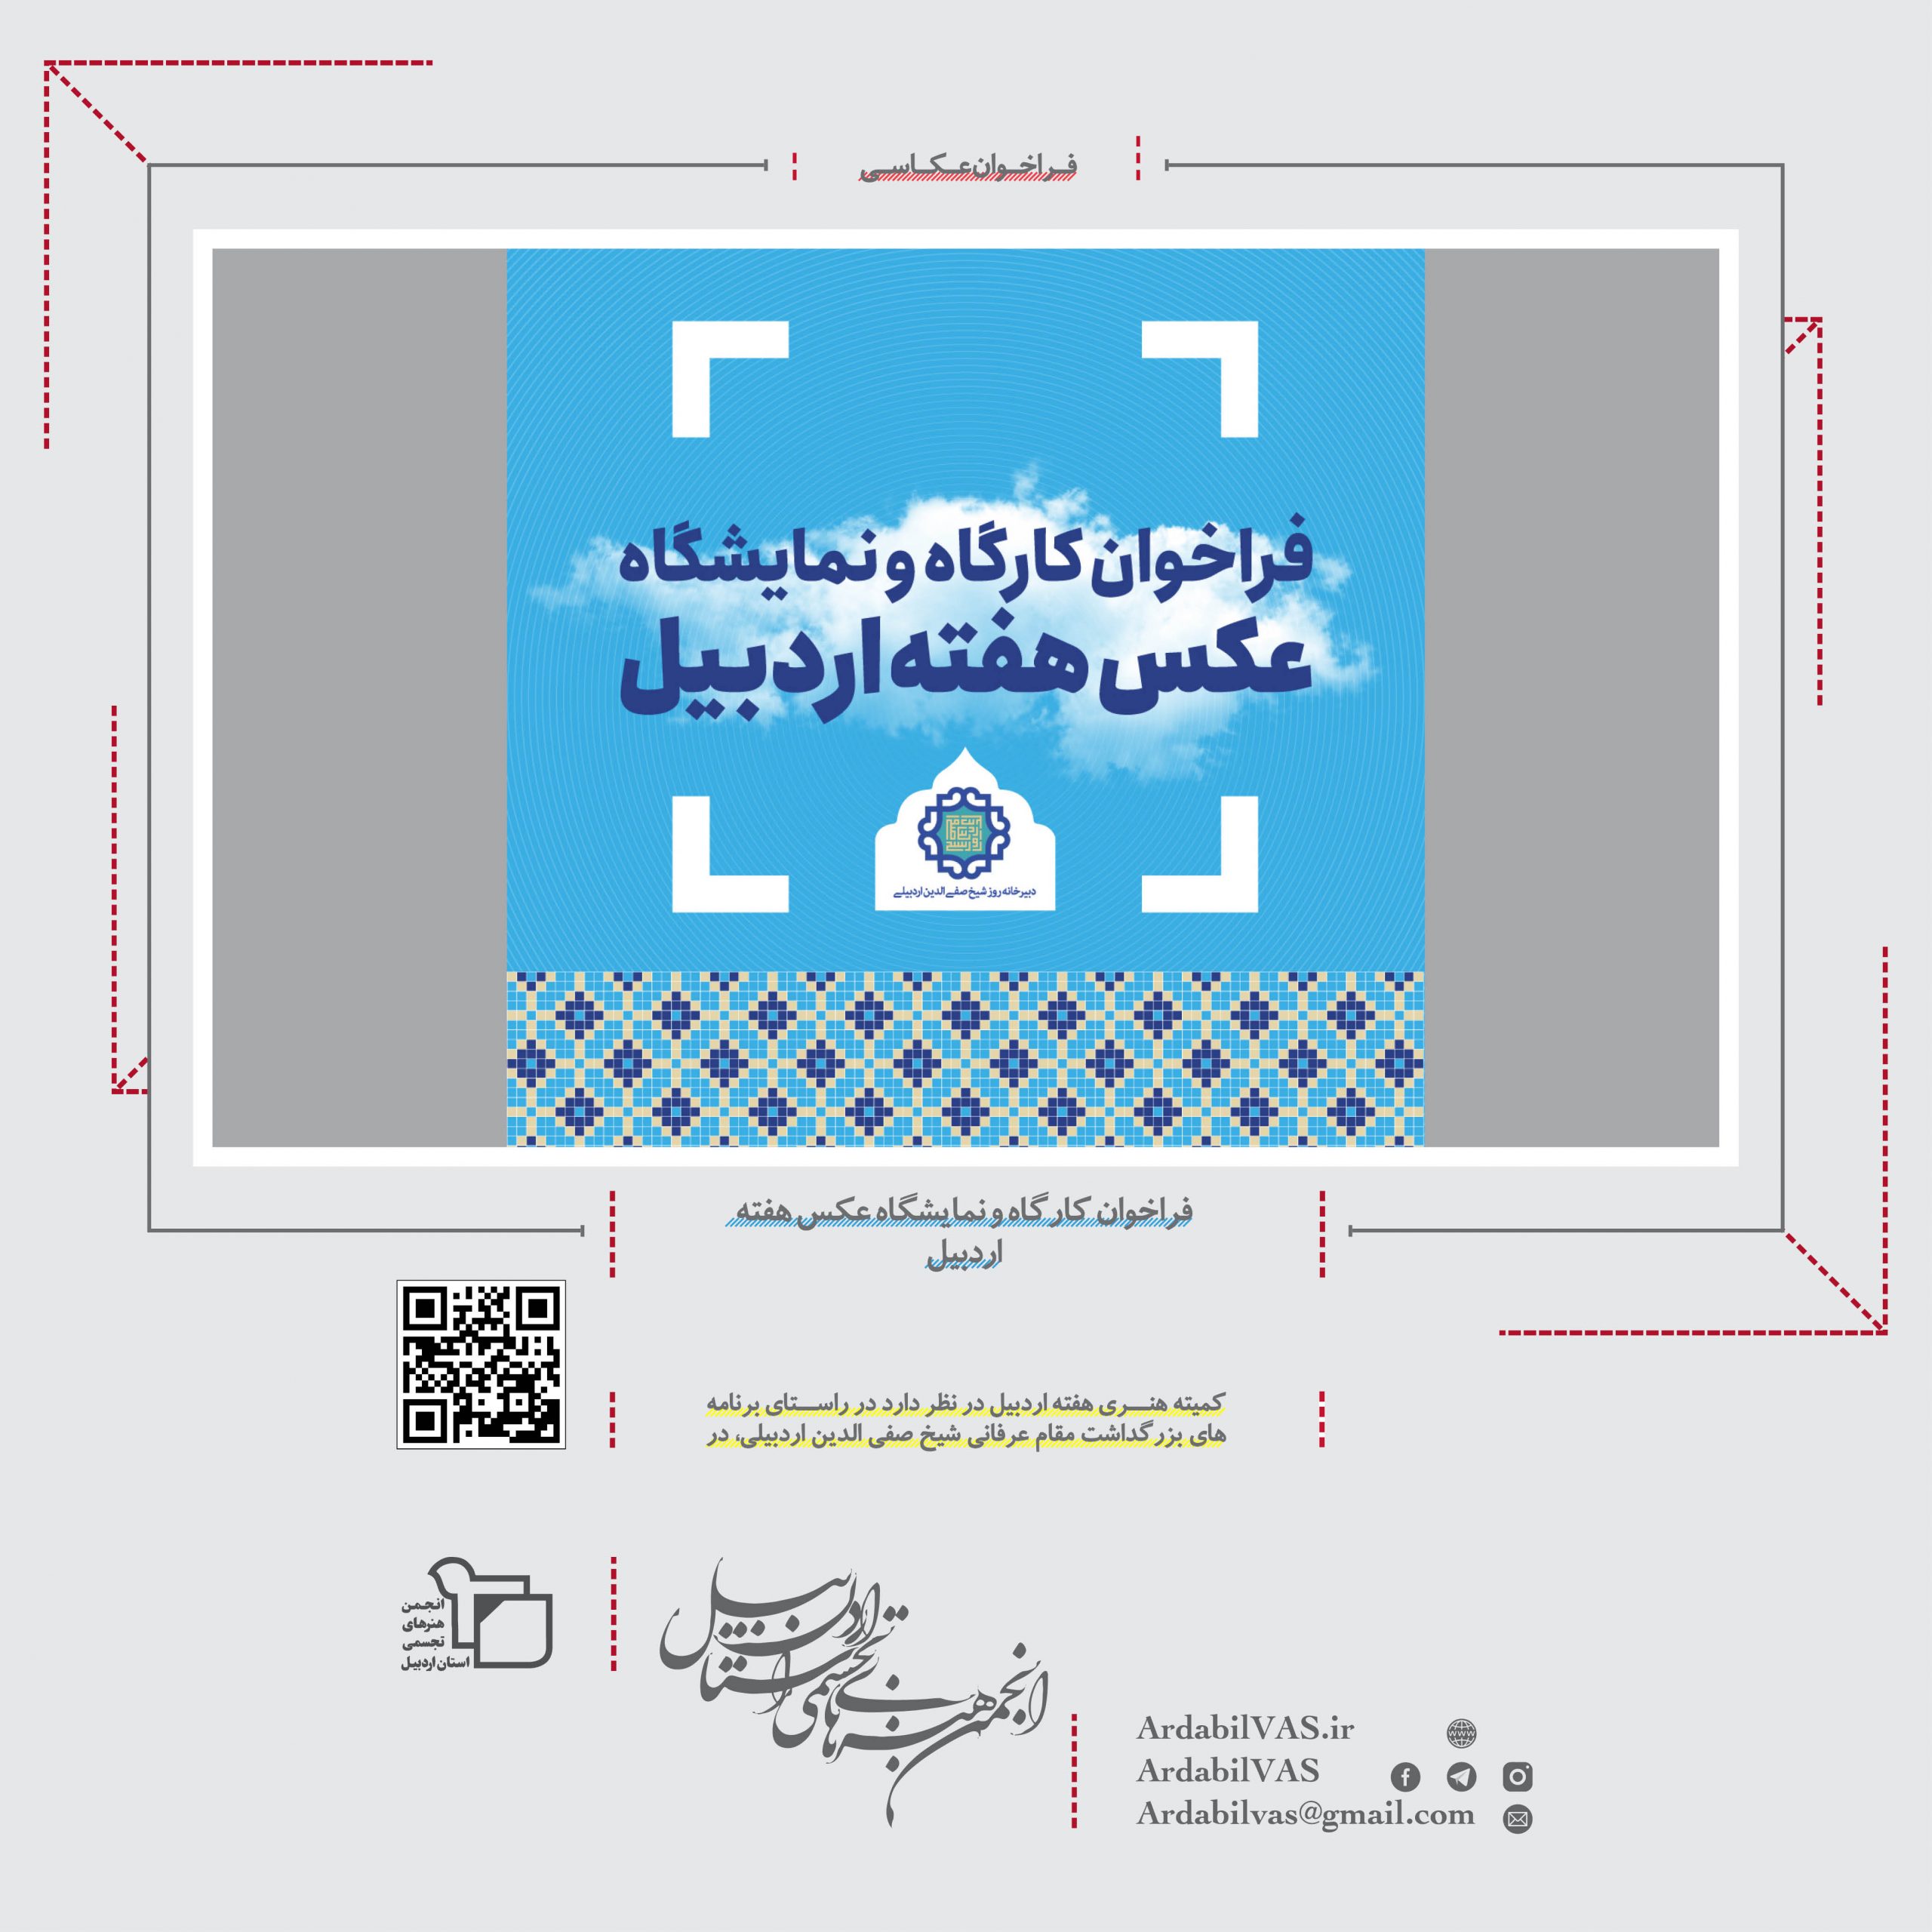 فراخوان کارگاه و نمایشگاه عکس هفته اردبیل  |  انجمن هنرهای تجسمی استان اردبیل ـ جامعه تخصصی هنرهای تجسمی